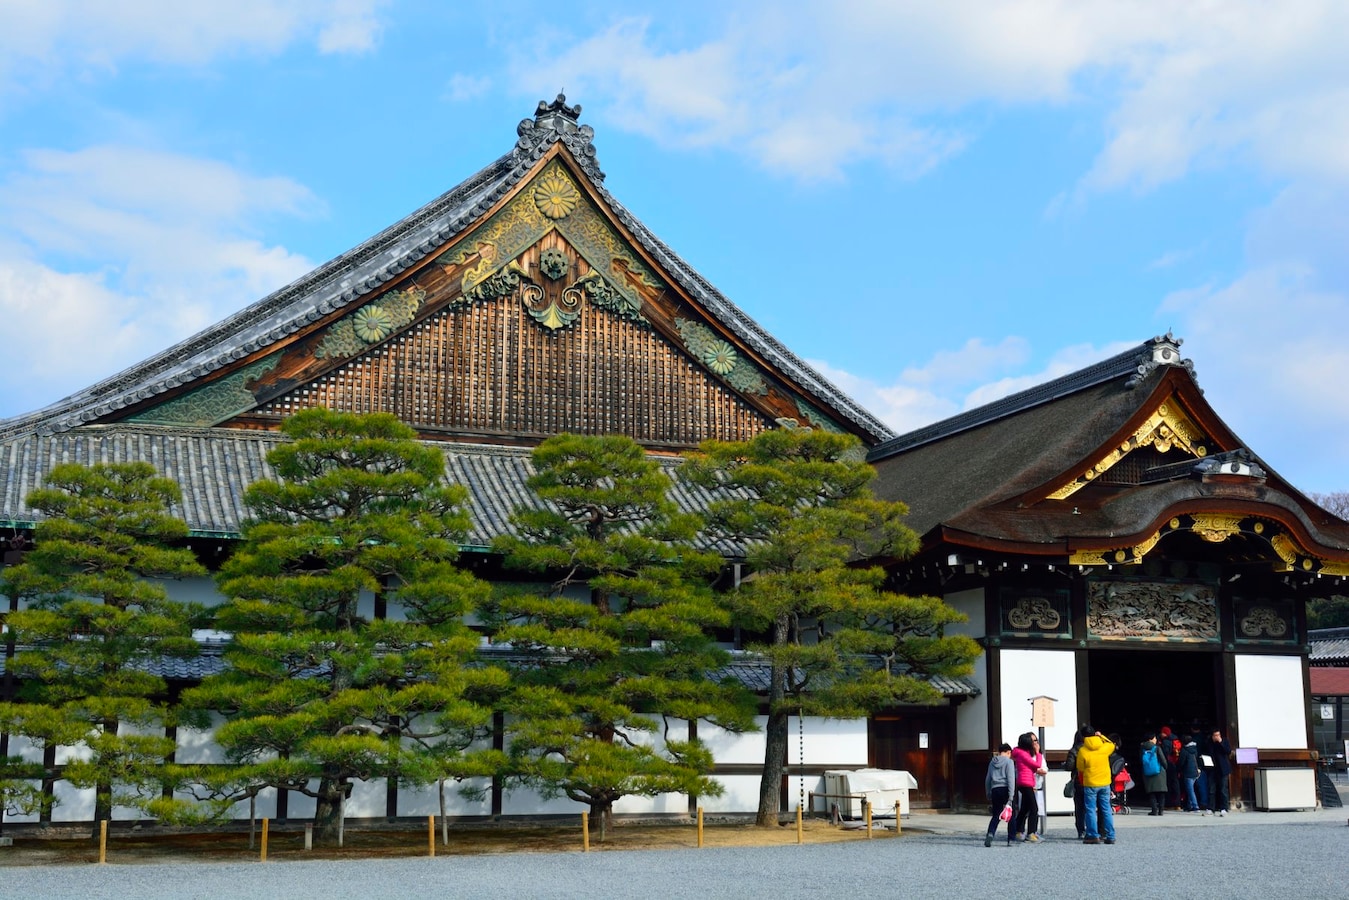 二条城の見どころ 世界遺産に登録された京都の城 名所 旧跡 All About